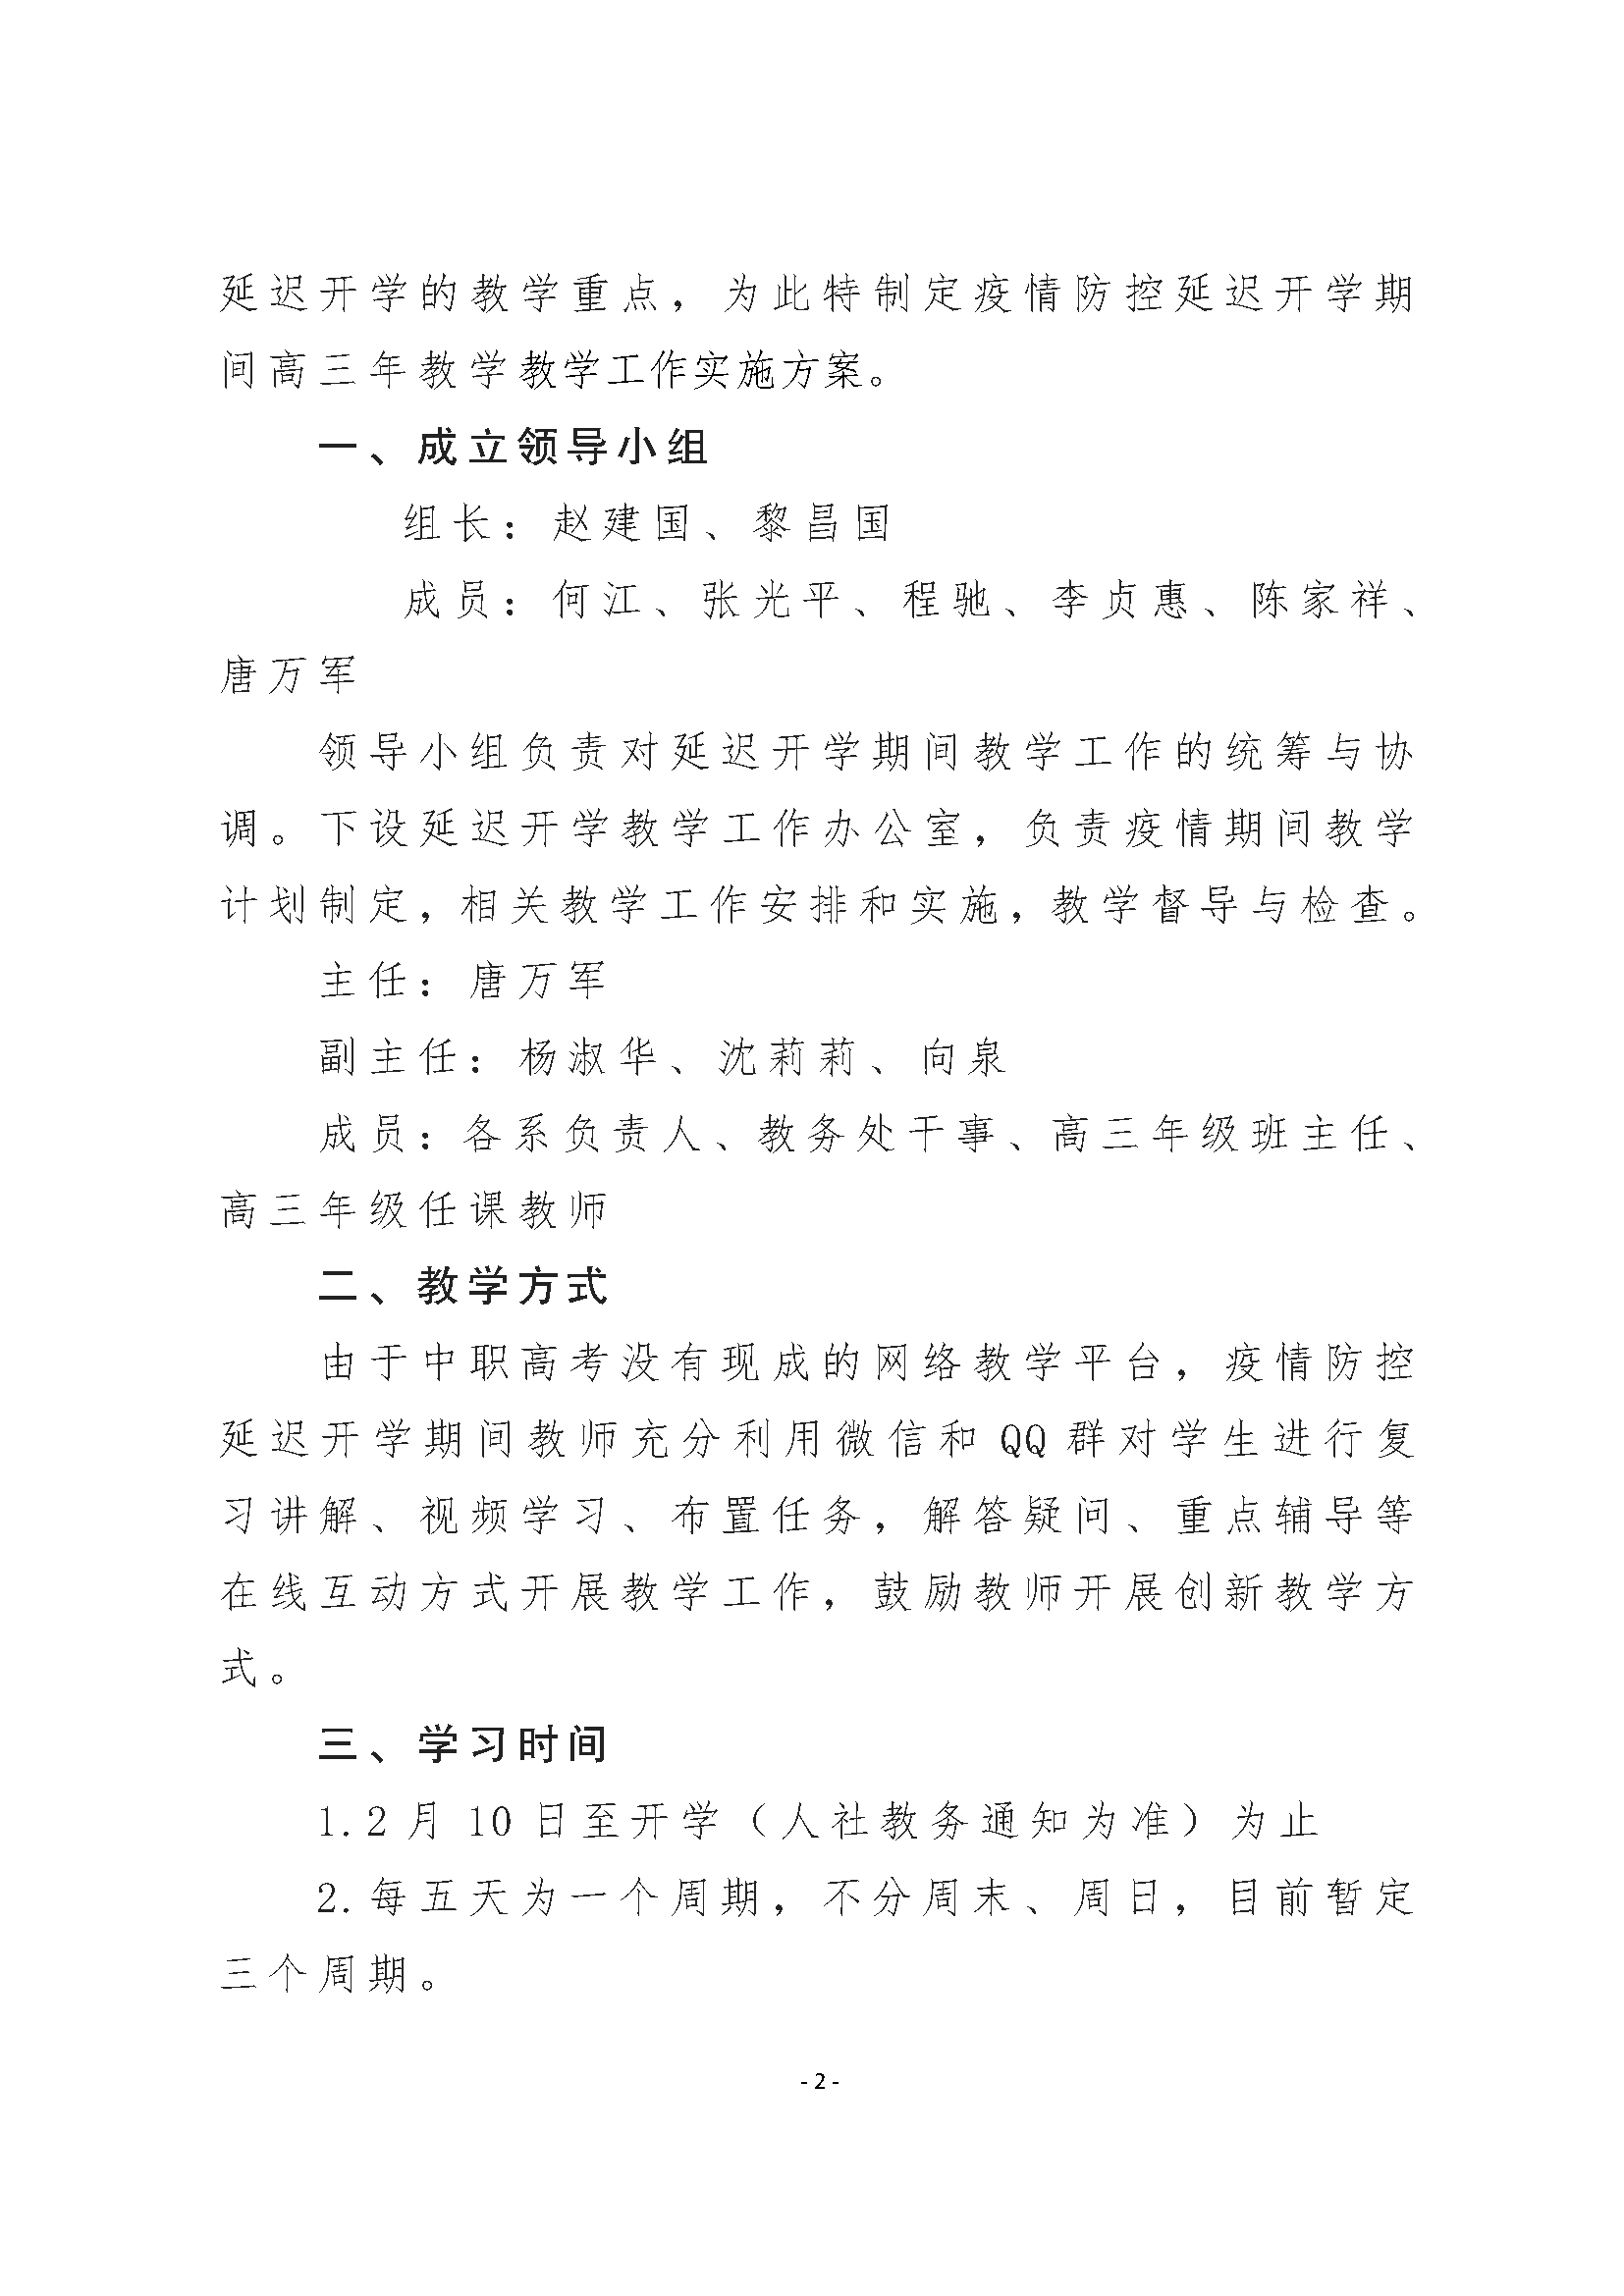 重庆市万州高级技工学校 关于做好疫情防控延迟开学期间高三年级教学工作的实施方案